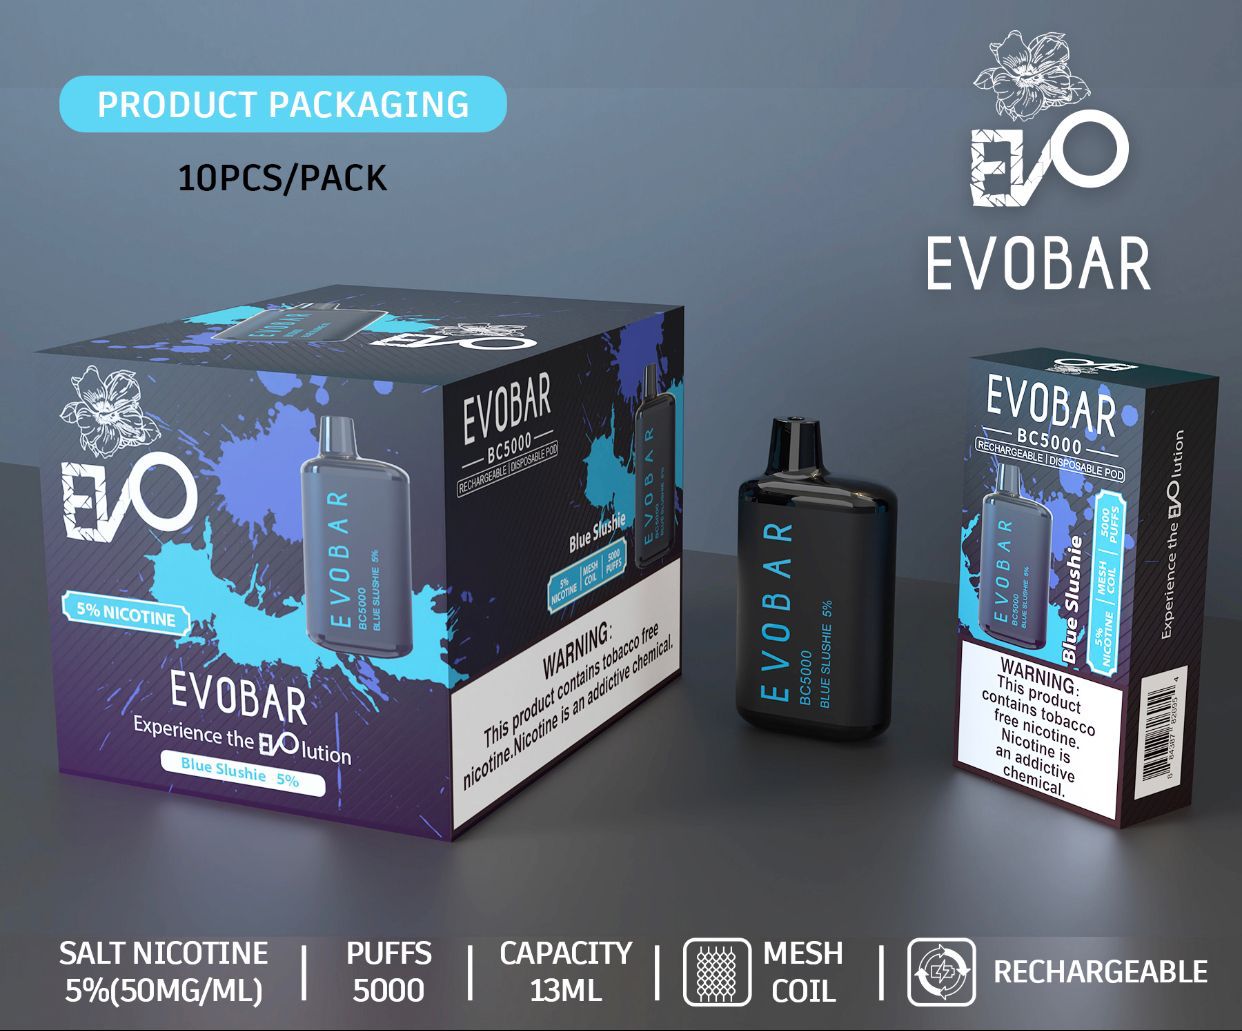 EVOBAR blue slushie 10 pack